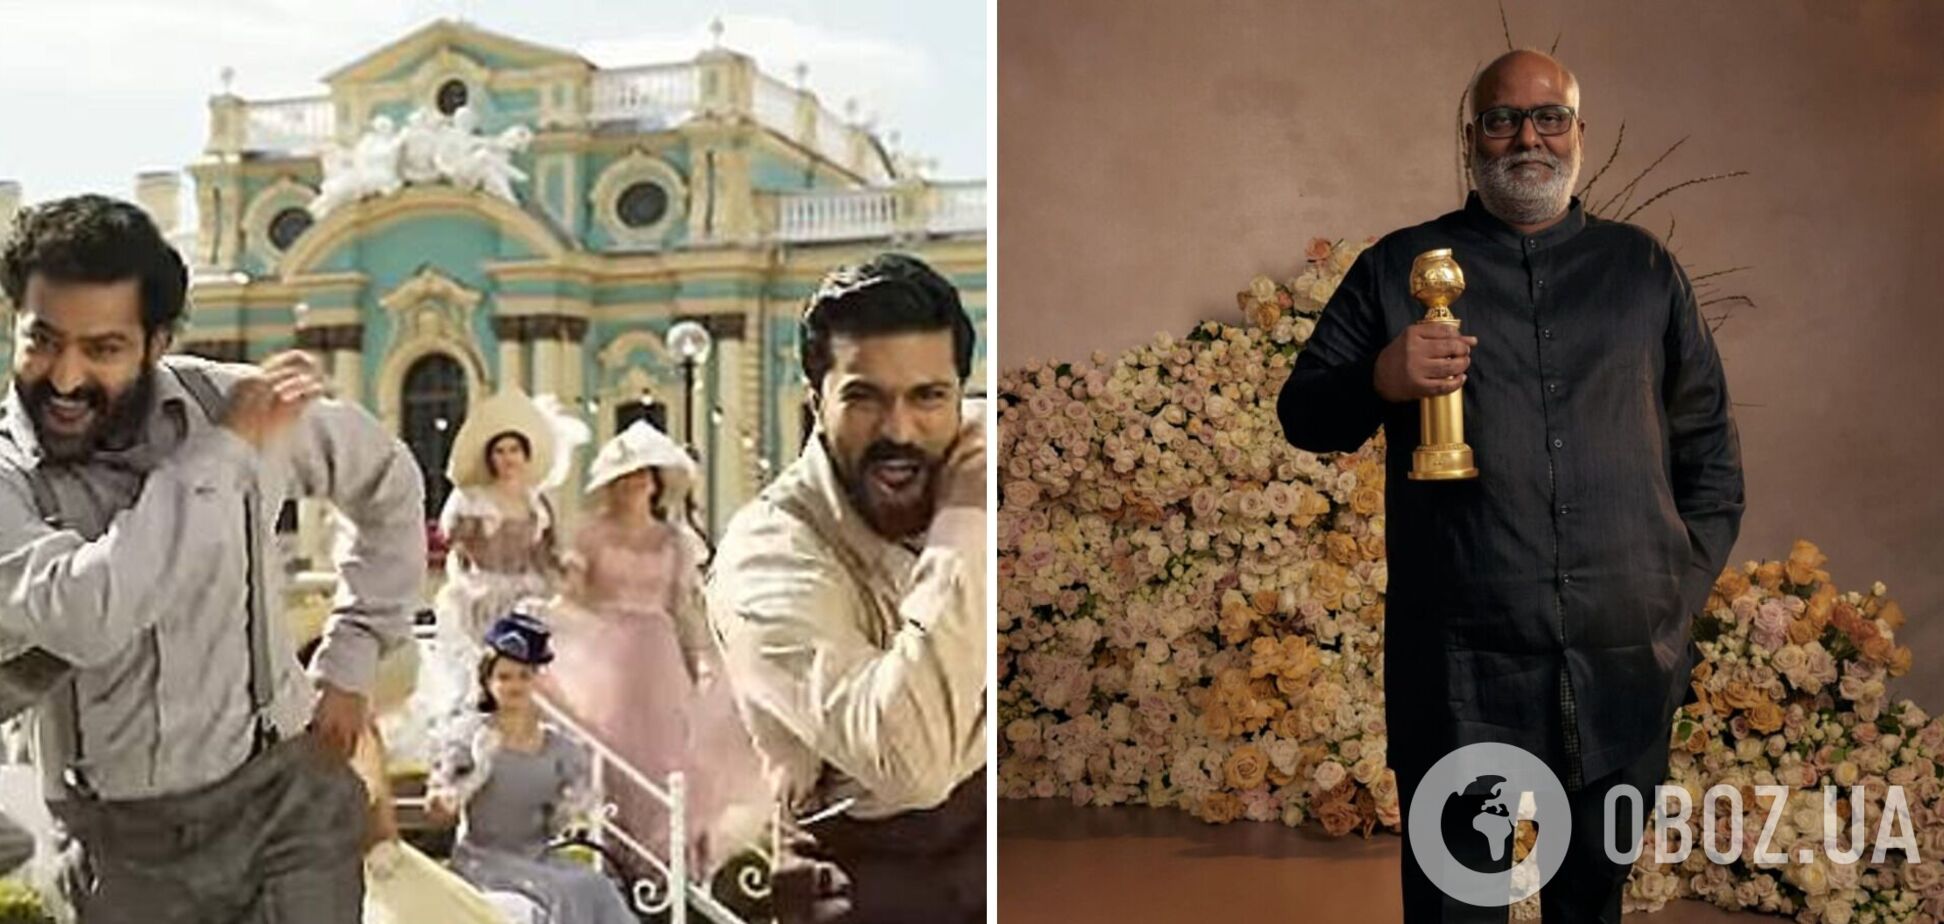 Індійська драма, яку знімали біля Маріїнського палацу в Києві, отримала 'Золотий глобус'. Відео